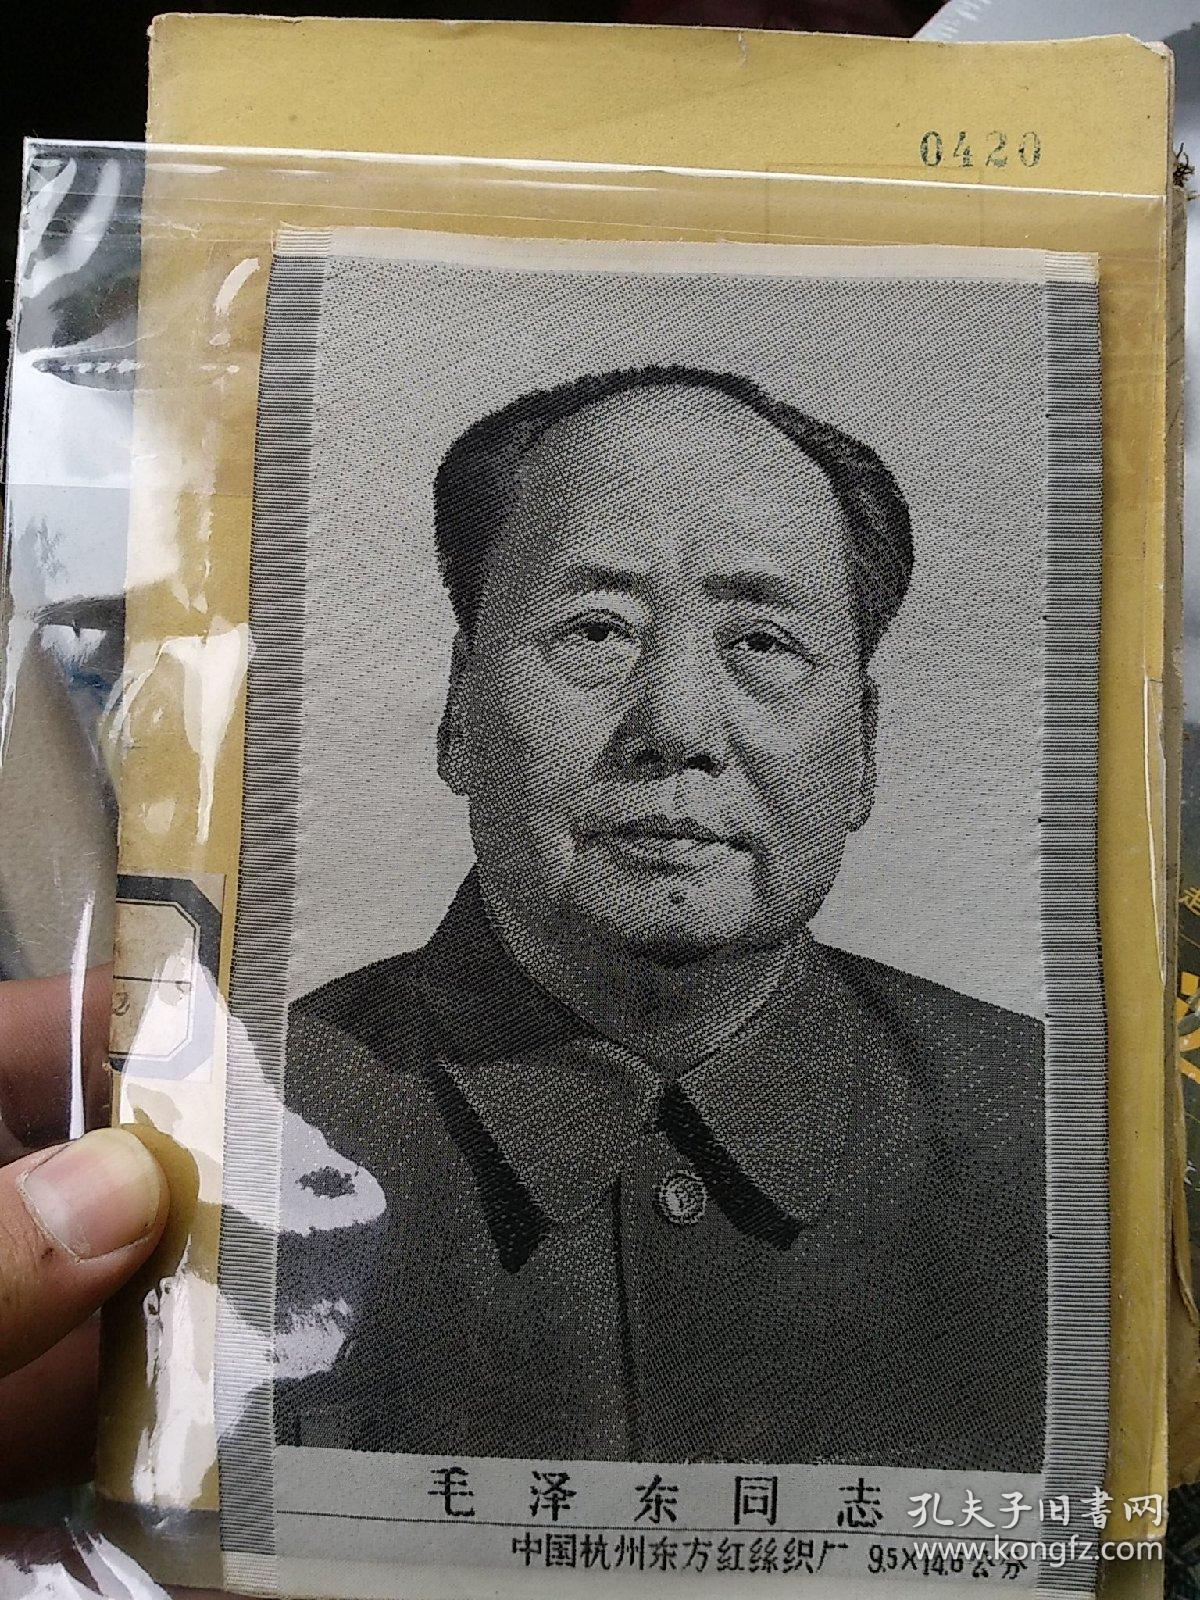 毛泽东 丝织像 中国杭州东方红丝织厂，小尺寸9.5*14.5，宜装置相框供奉，品特好，保真。